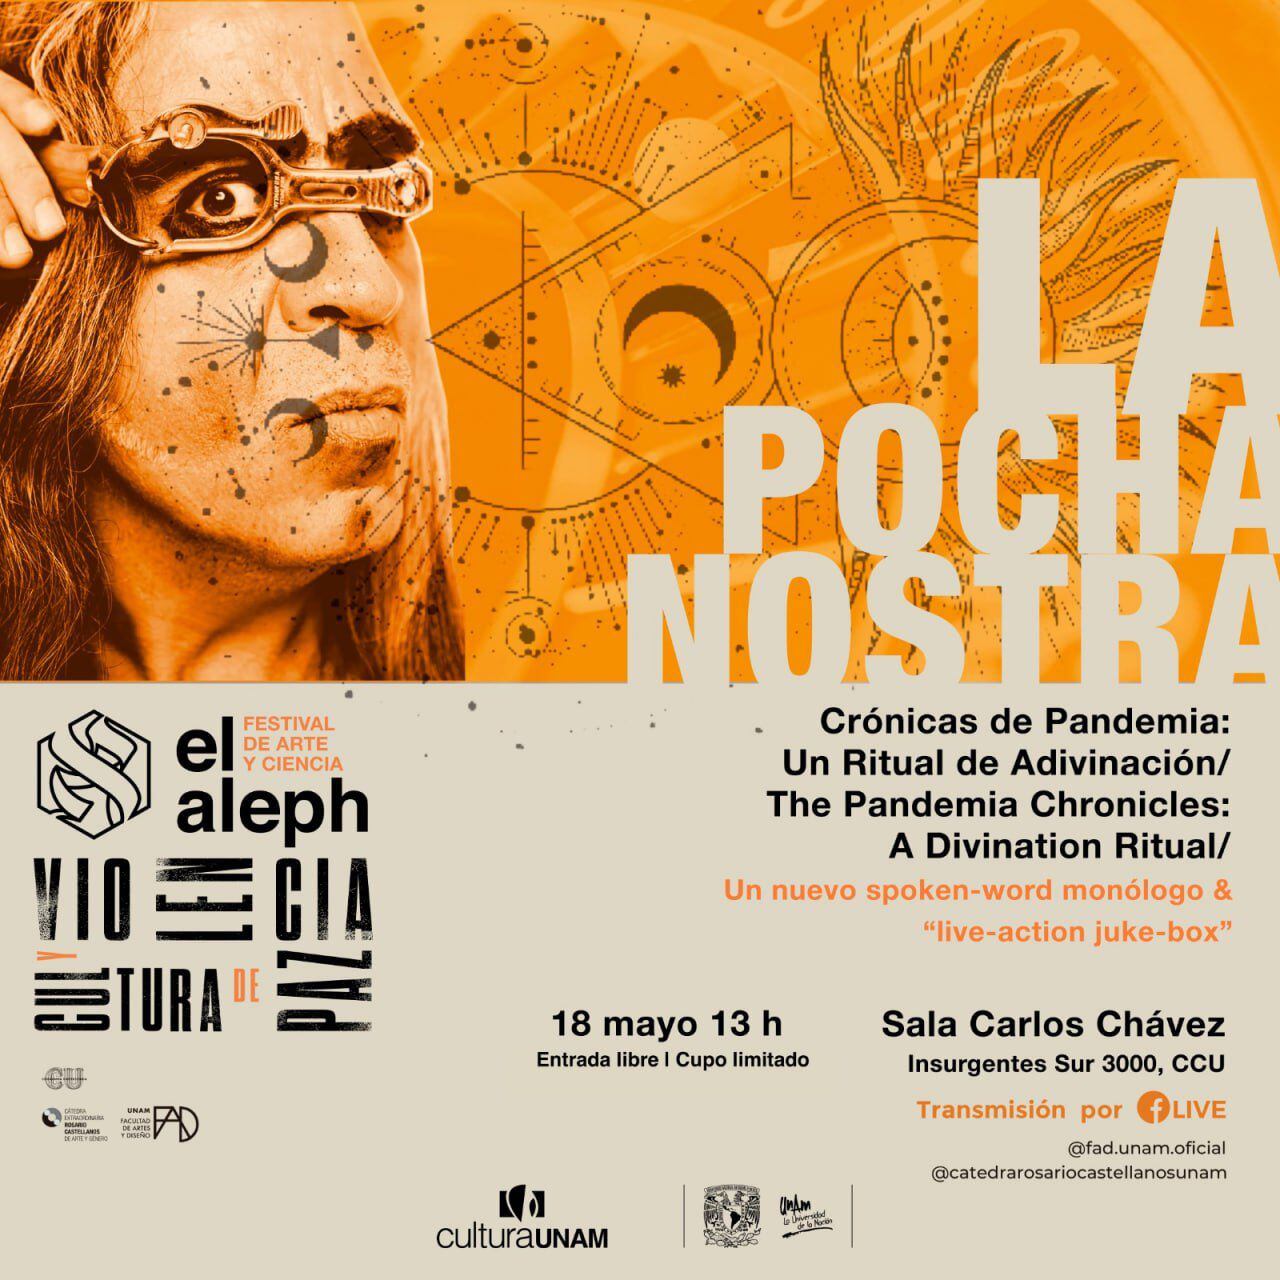 La Pocha Nostra se presenta en El Aleph, festival de la UNAM.